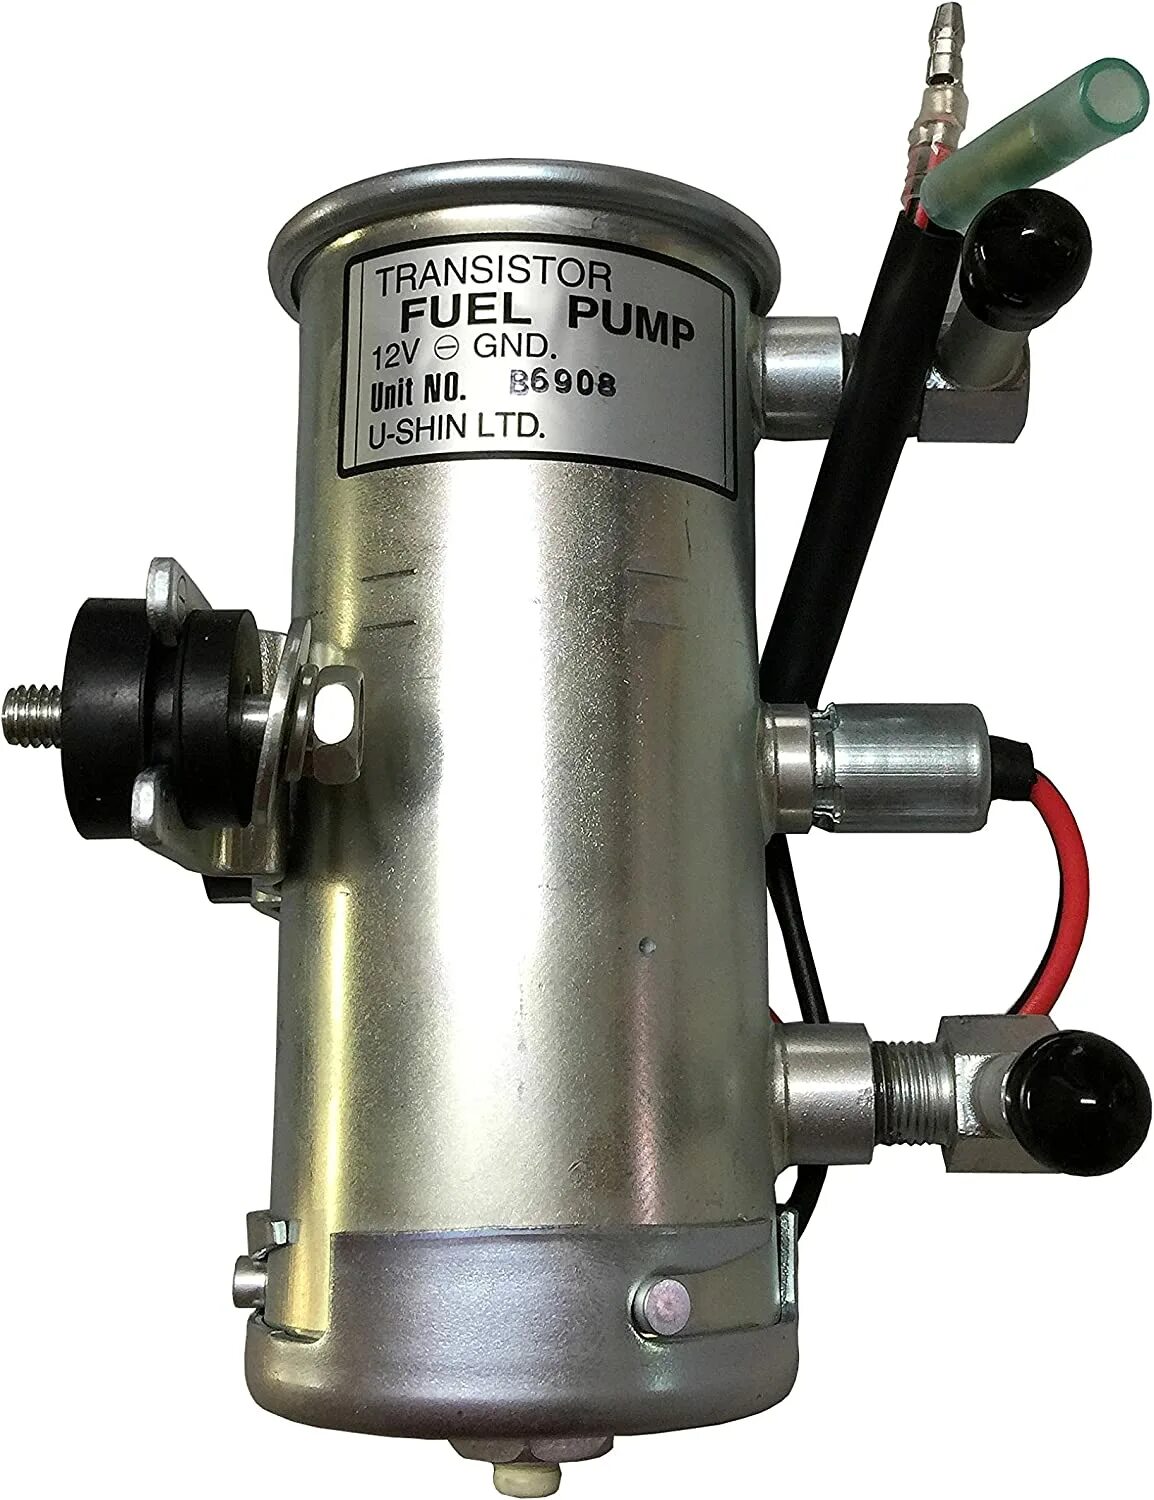 Топливный насос 12v. Насос топливный u-Shin fuel Pump b6908h. Fuel Pump 12v b6916. Transistor fuel Pump 12v a6907. Насос 24v GND Unit.